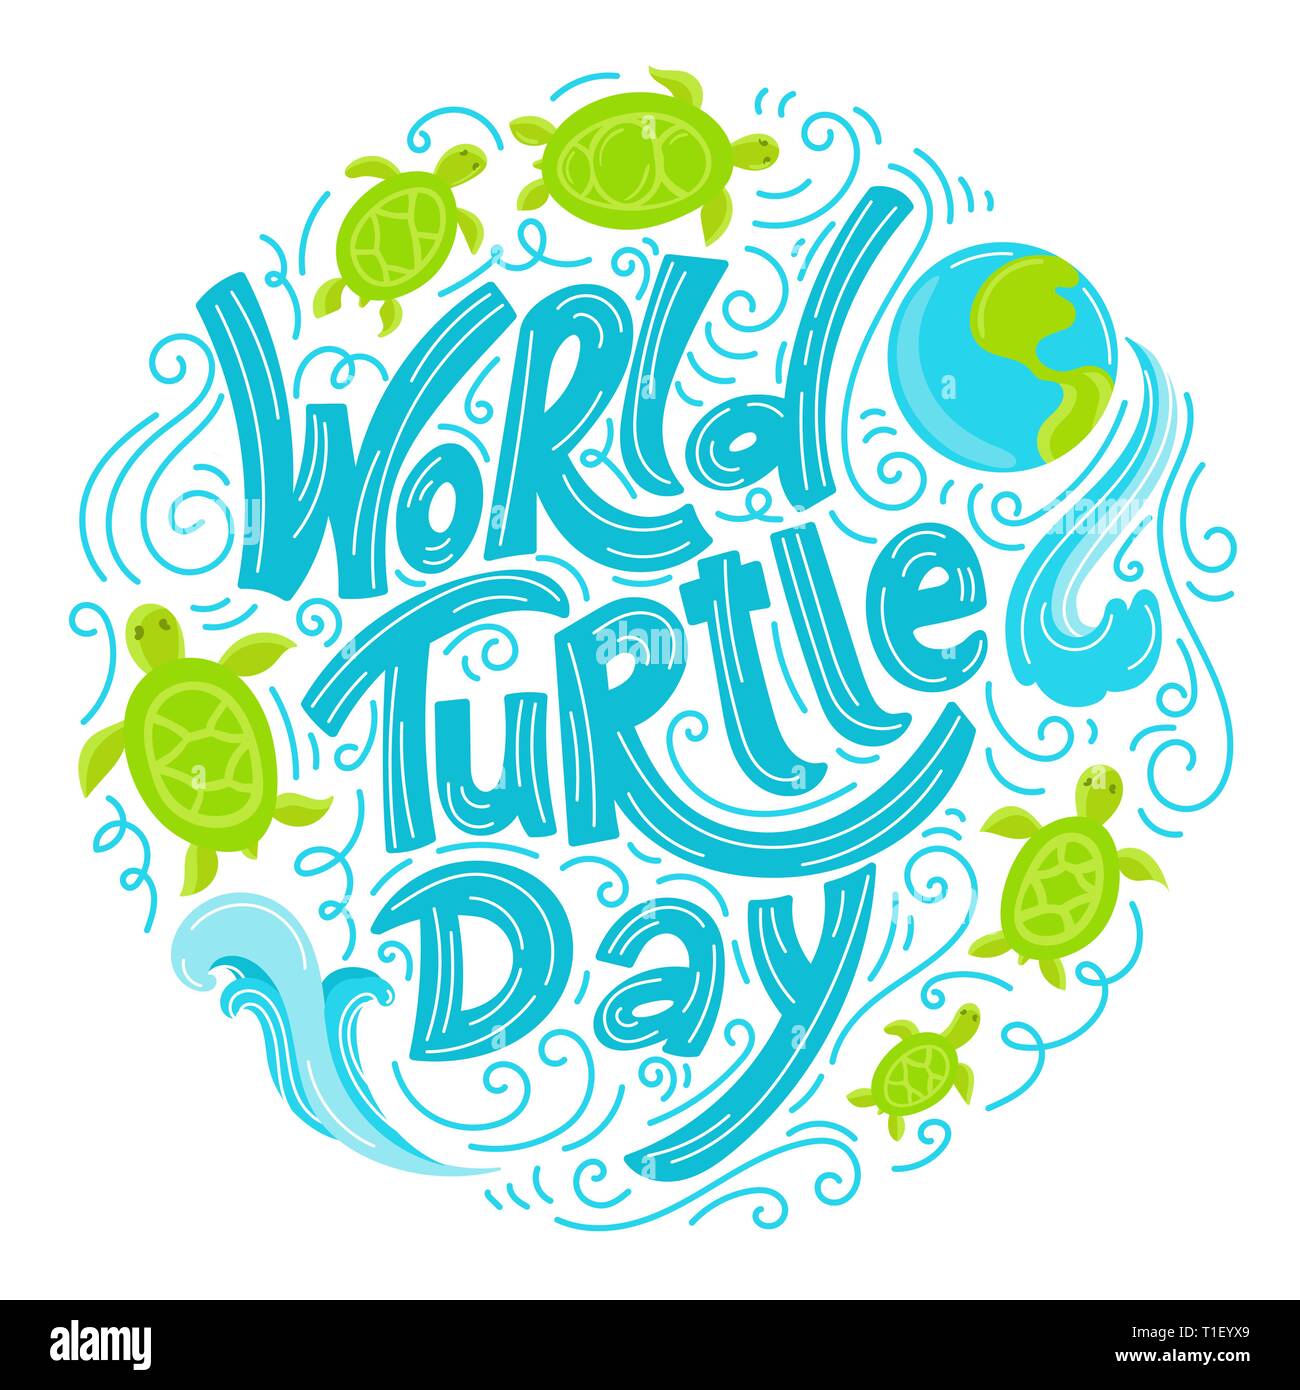 Fond de la Journée mondiale de la tortue. Lettrage avec éléments dessinés à la main. Style doodle moderne. Illustration de Vecteur